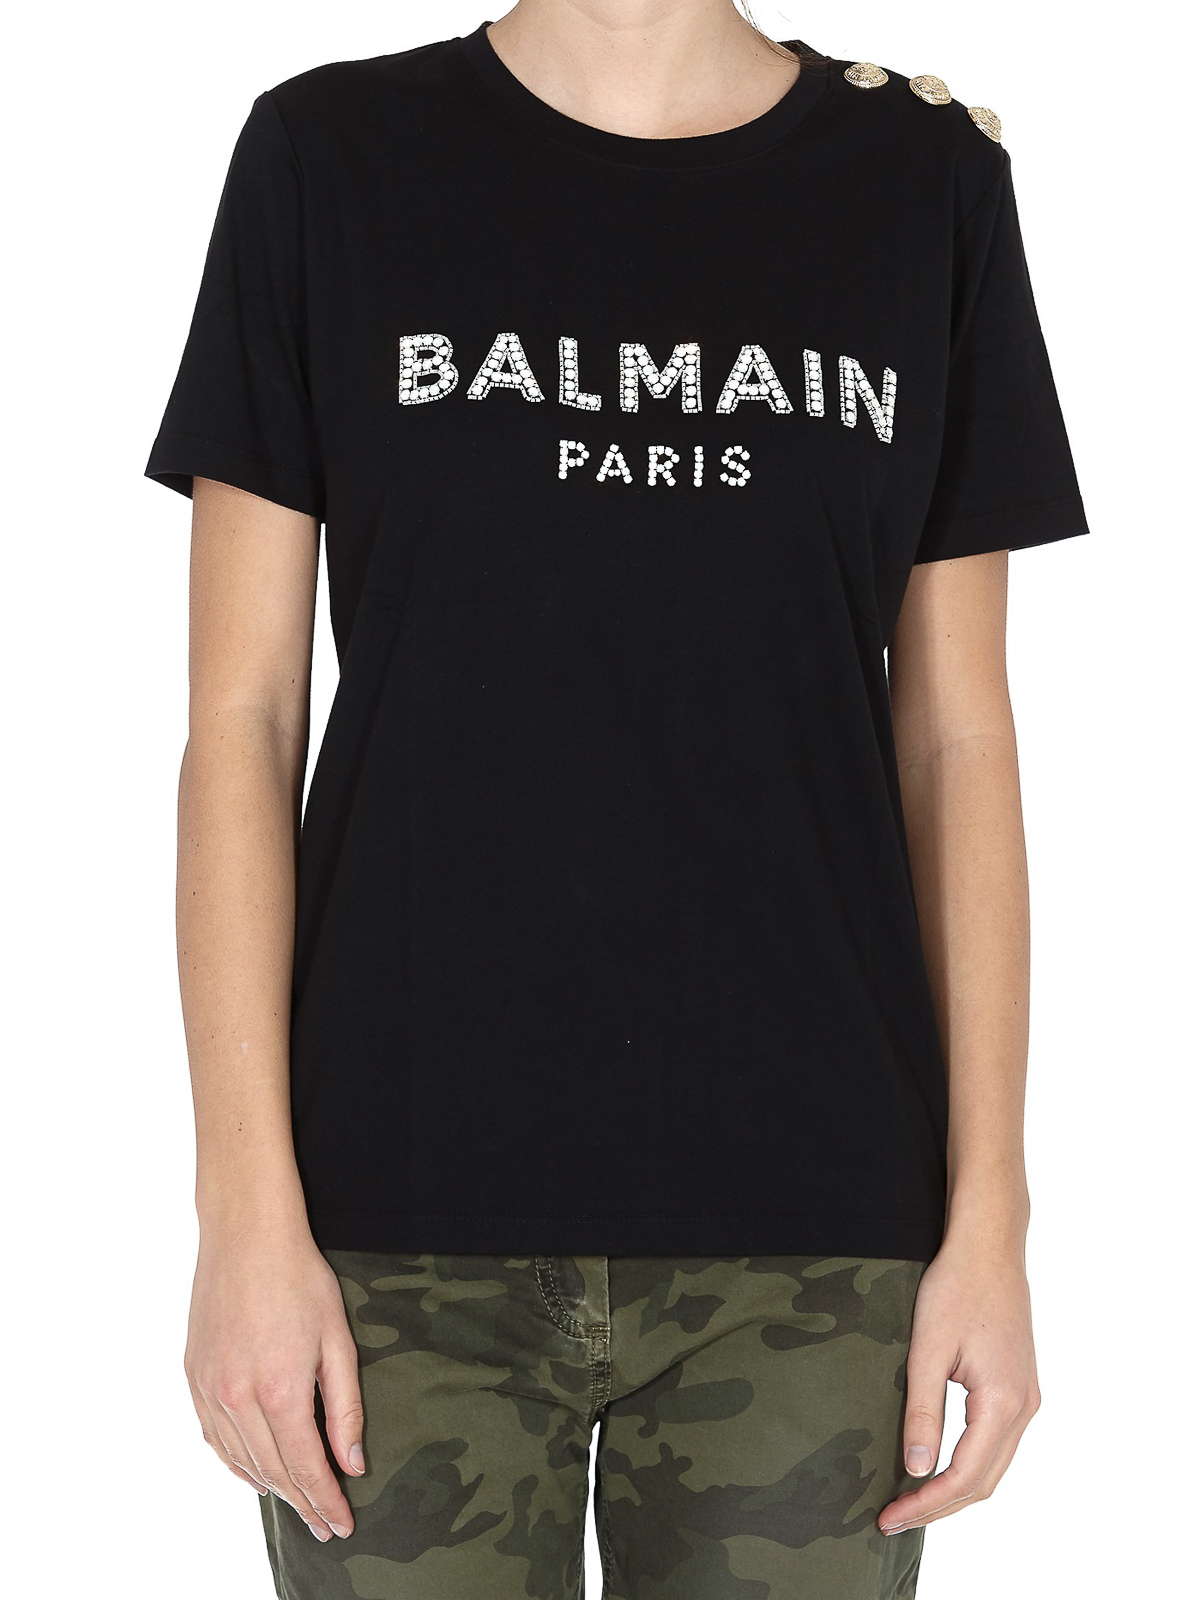 græs sæt fraktion T-shirts Balmain - Rhinestone logo T-shirt - TF11553P036EAB